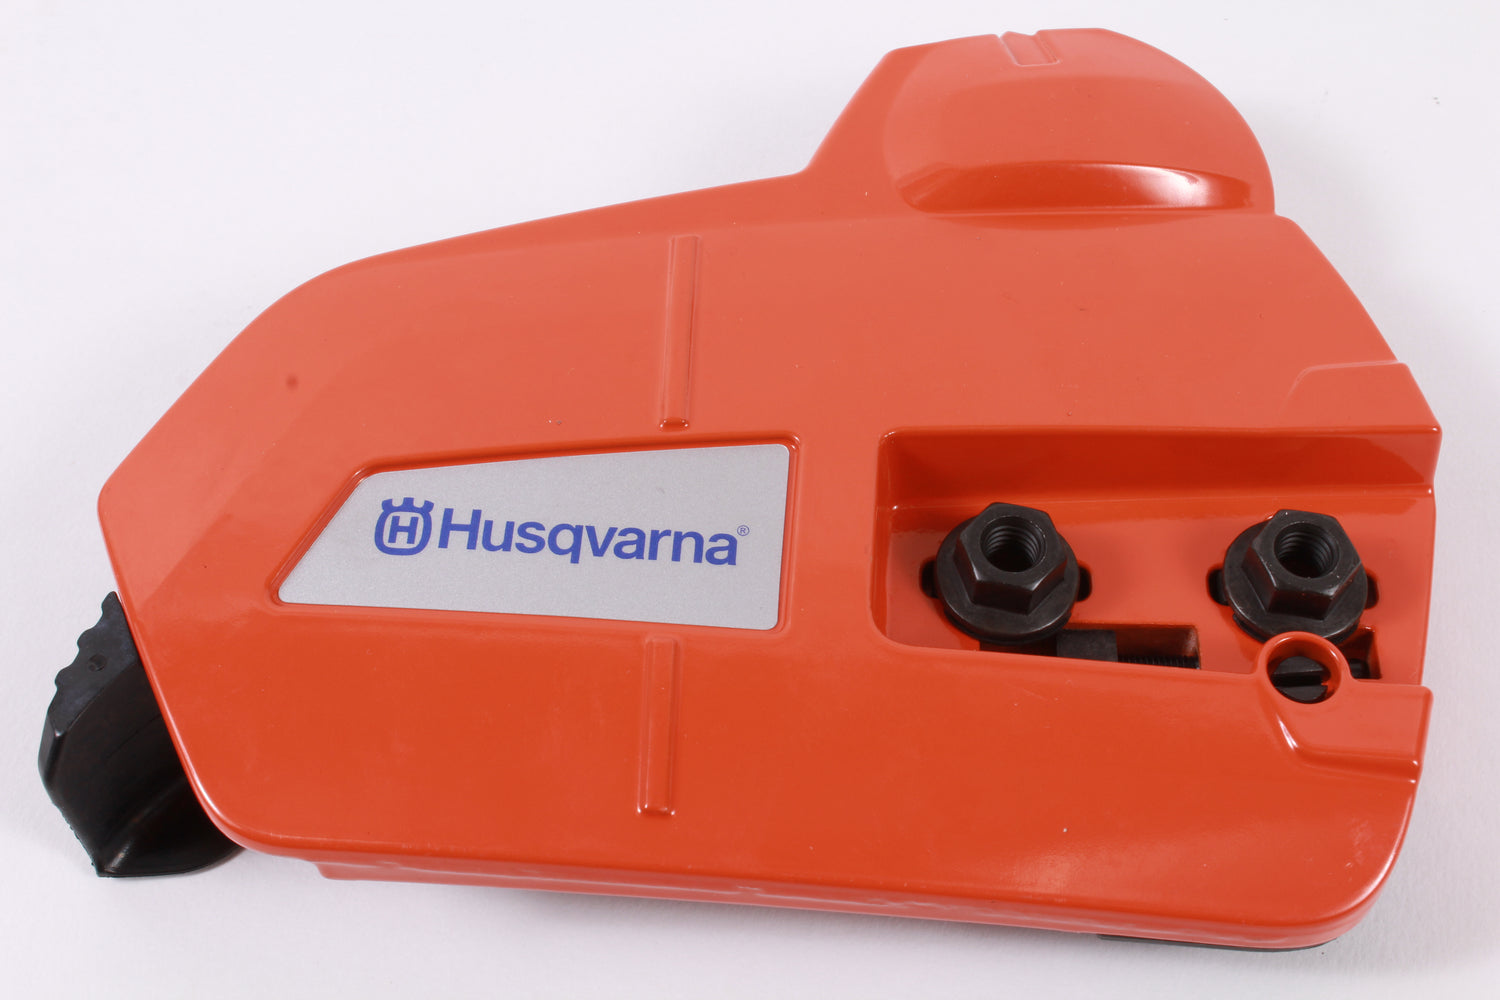 Genuine Husqvarna 505199006 Clutch Cover Fits 545 555 Replaces 505199002